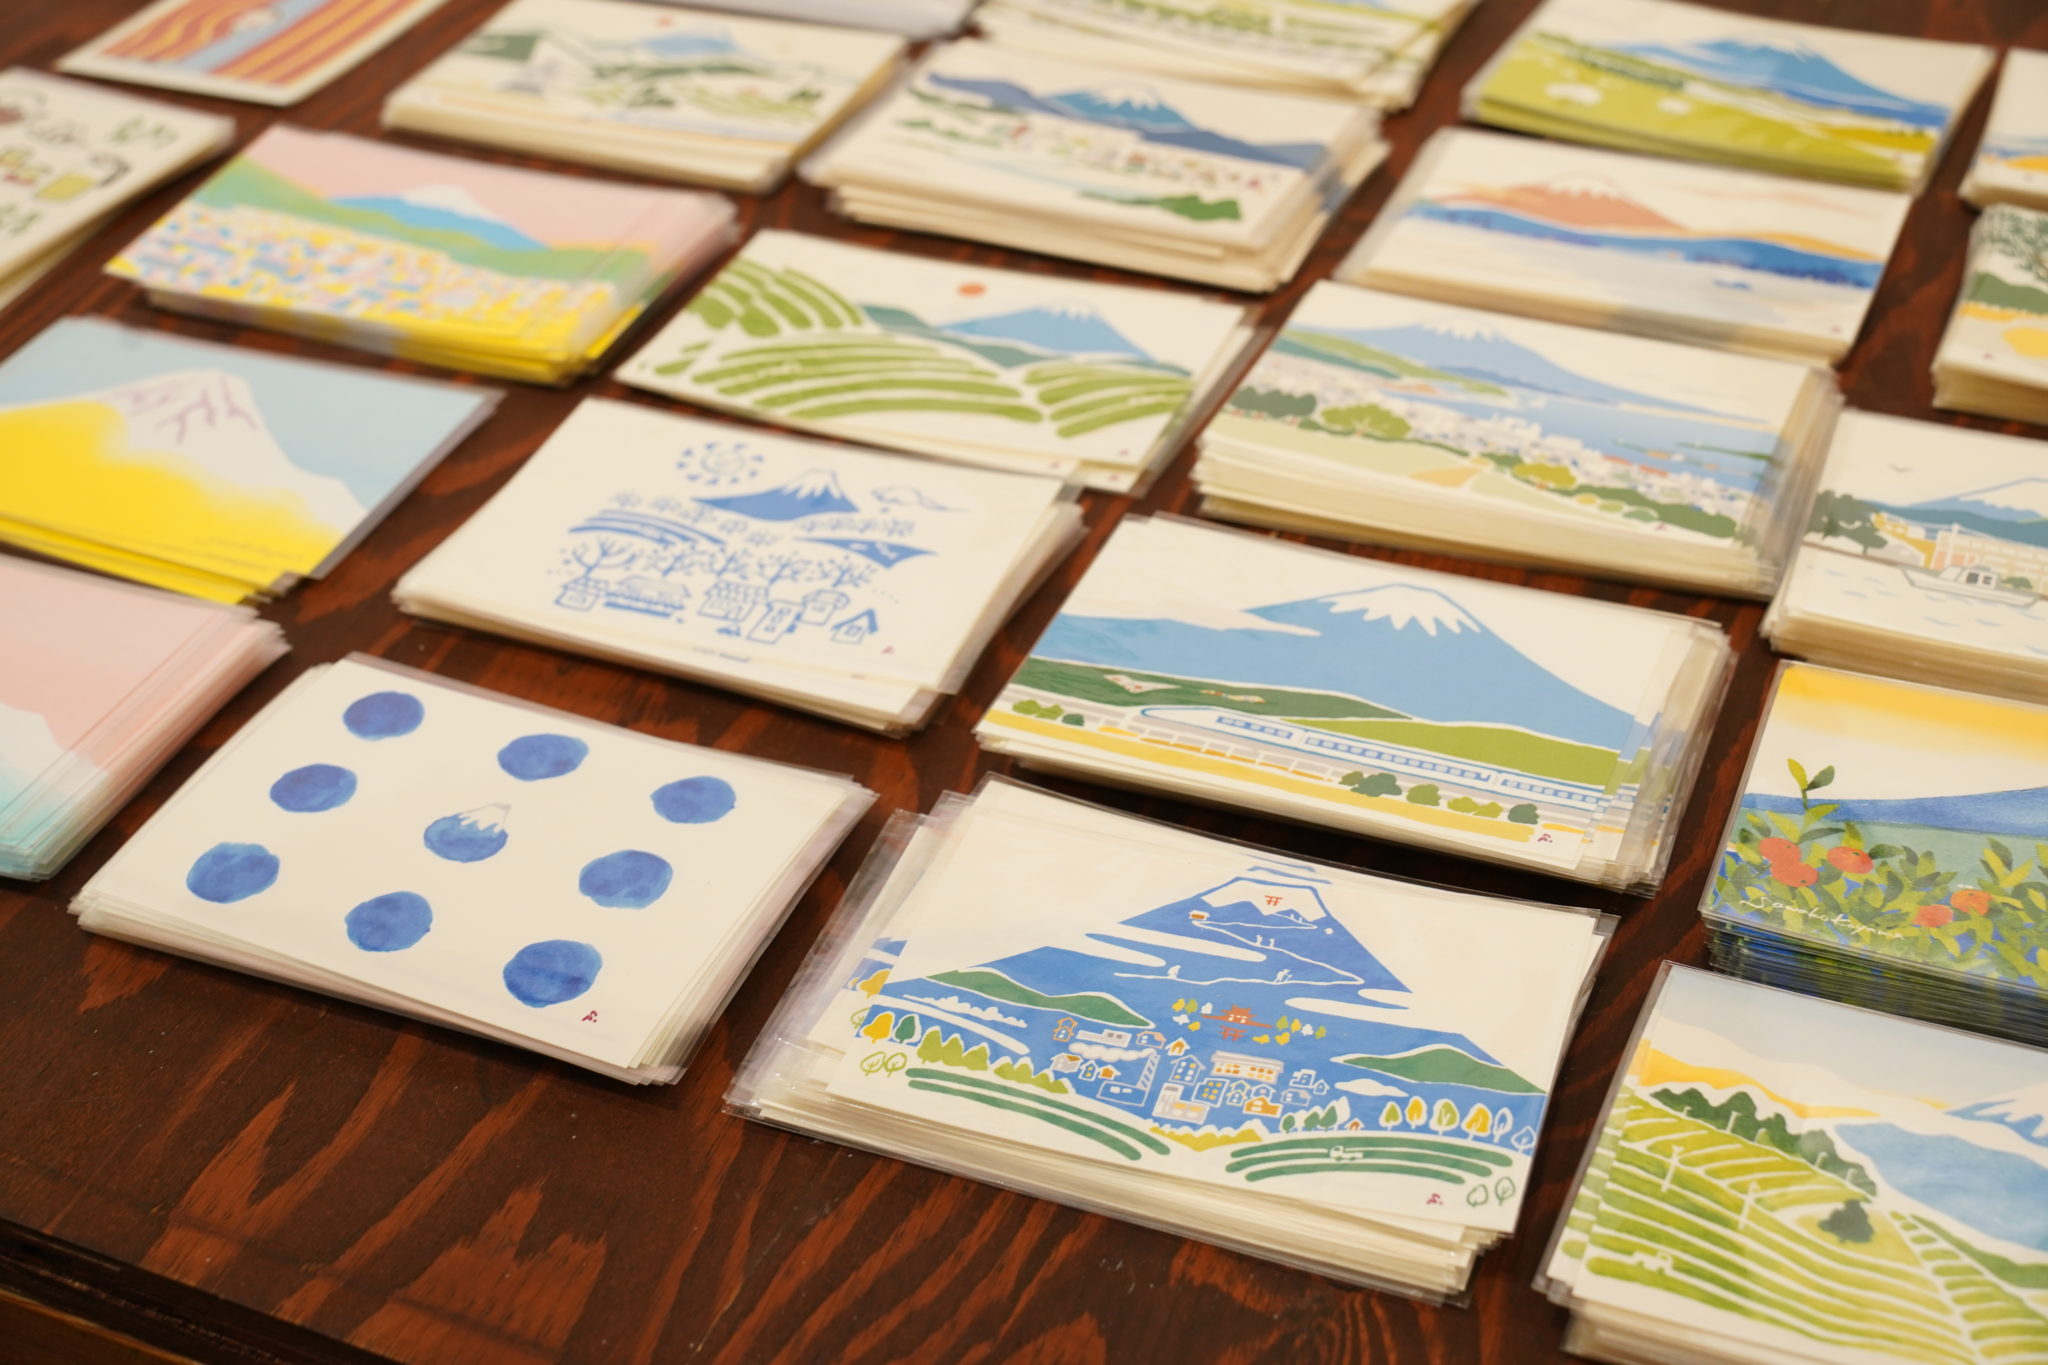 富士山をテーマにしたポストカードがずらり